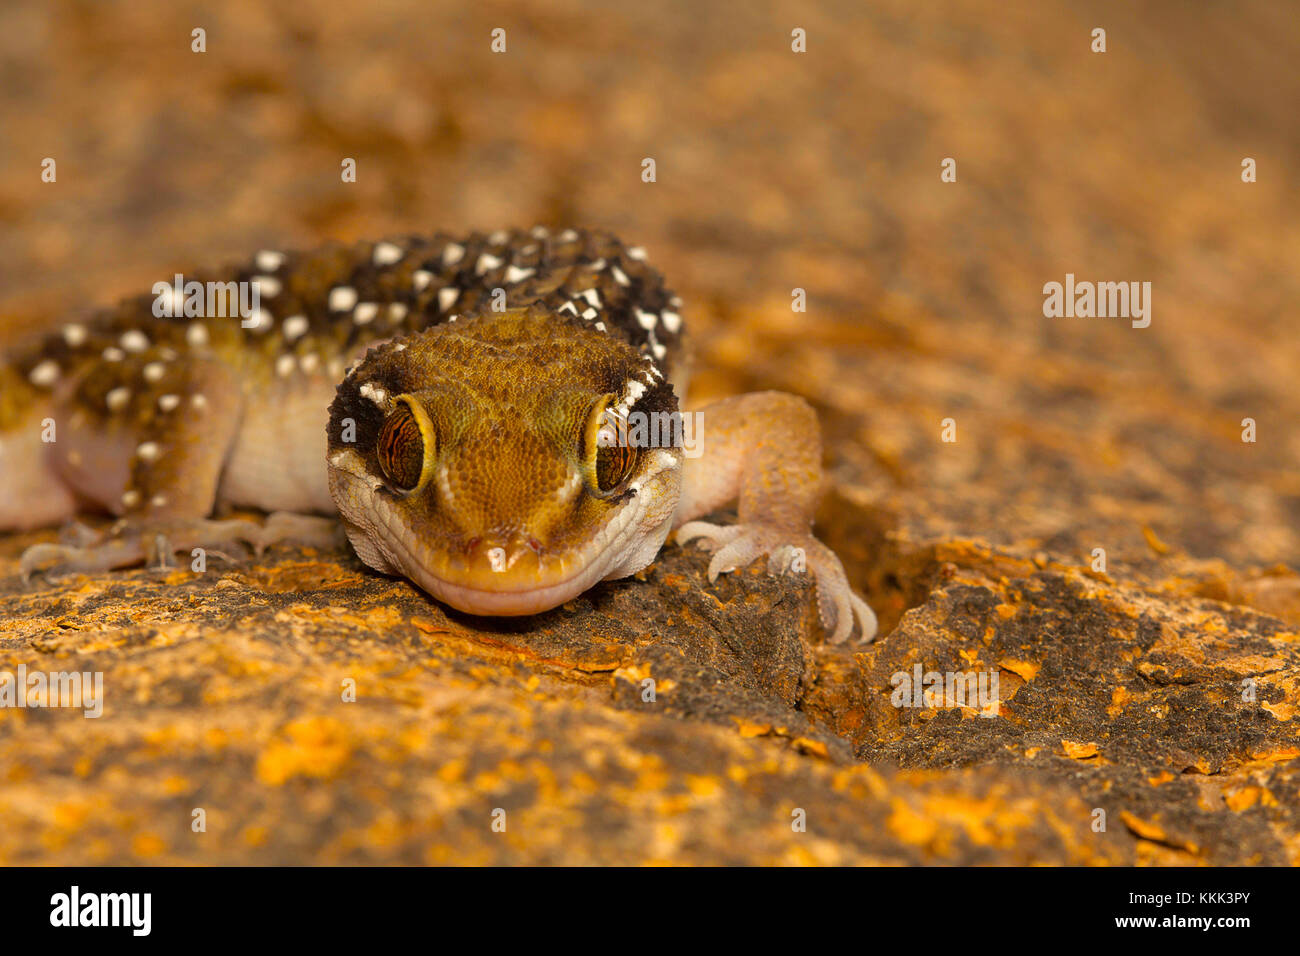 La colline de termites geckos geckos sont assez grandes bandes distinctes qui portent sur leur dos. On trouve couramment dans et autour de termitières Banque D'Images